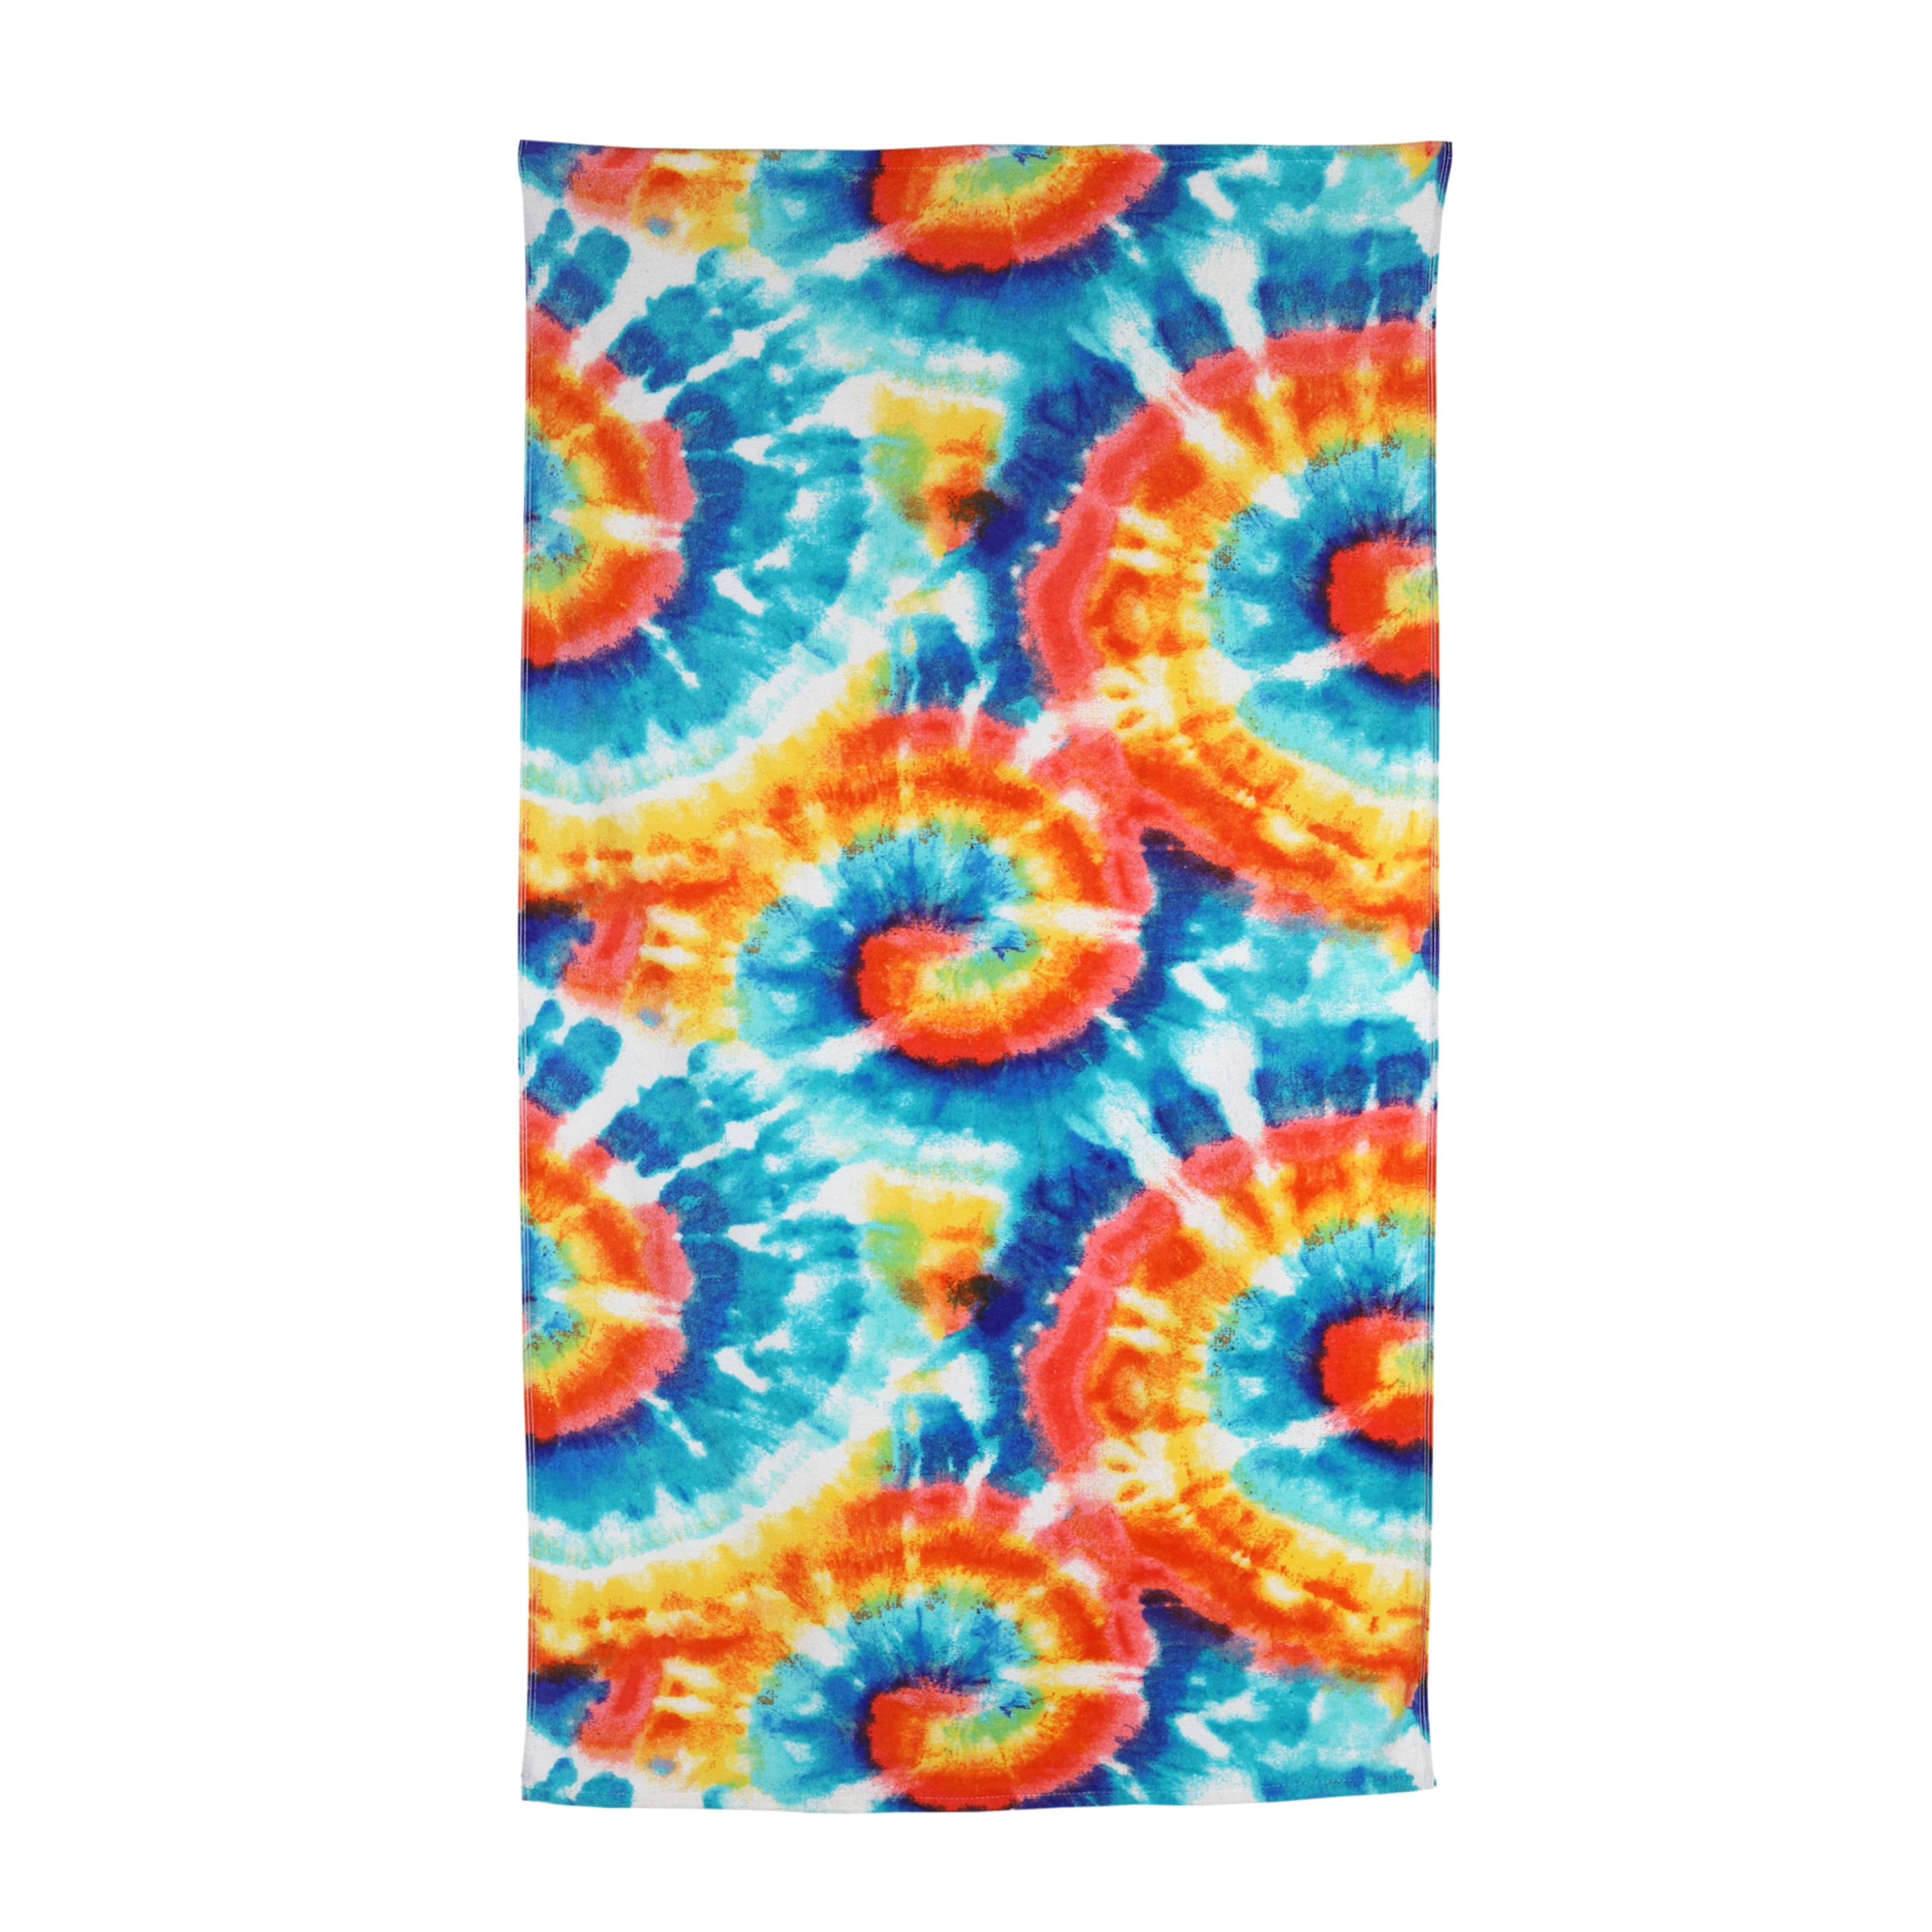 Design "Tie Dye Blue" 63" Round Beach Towel 